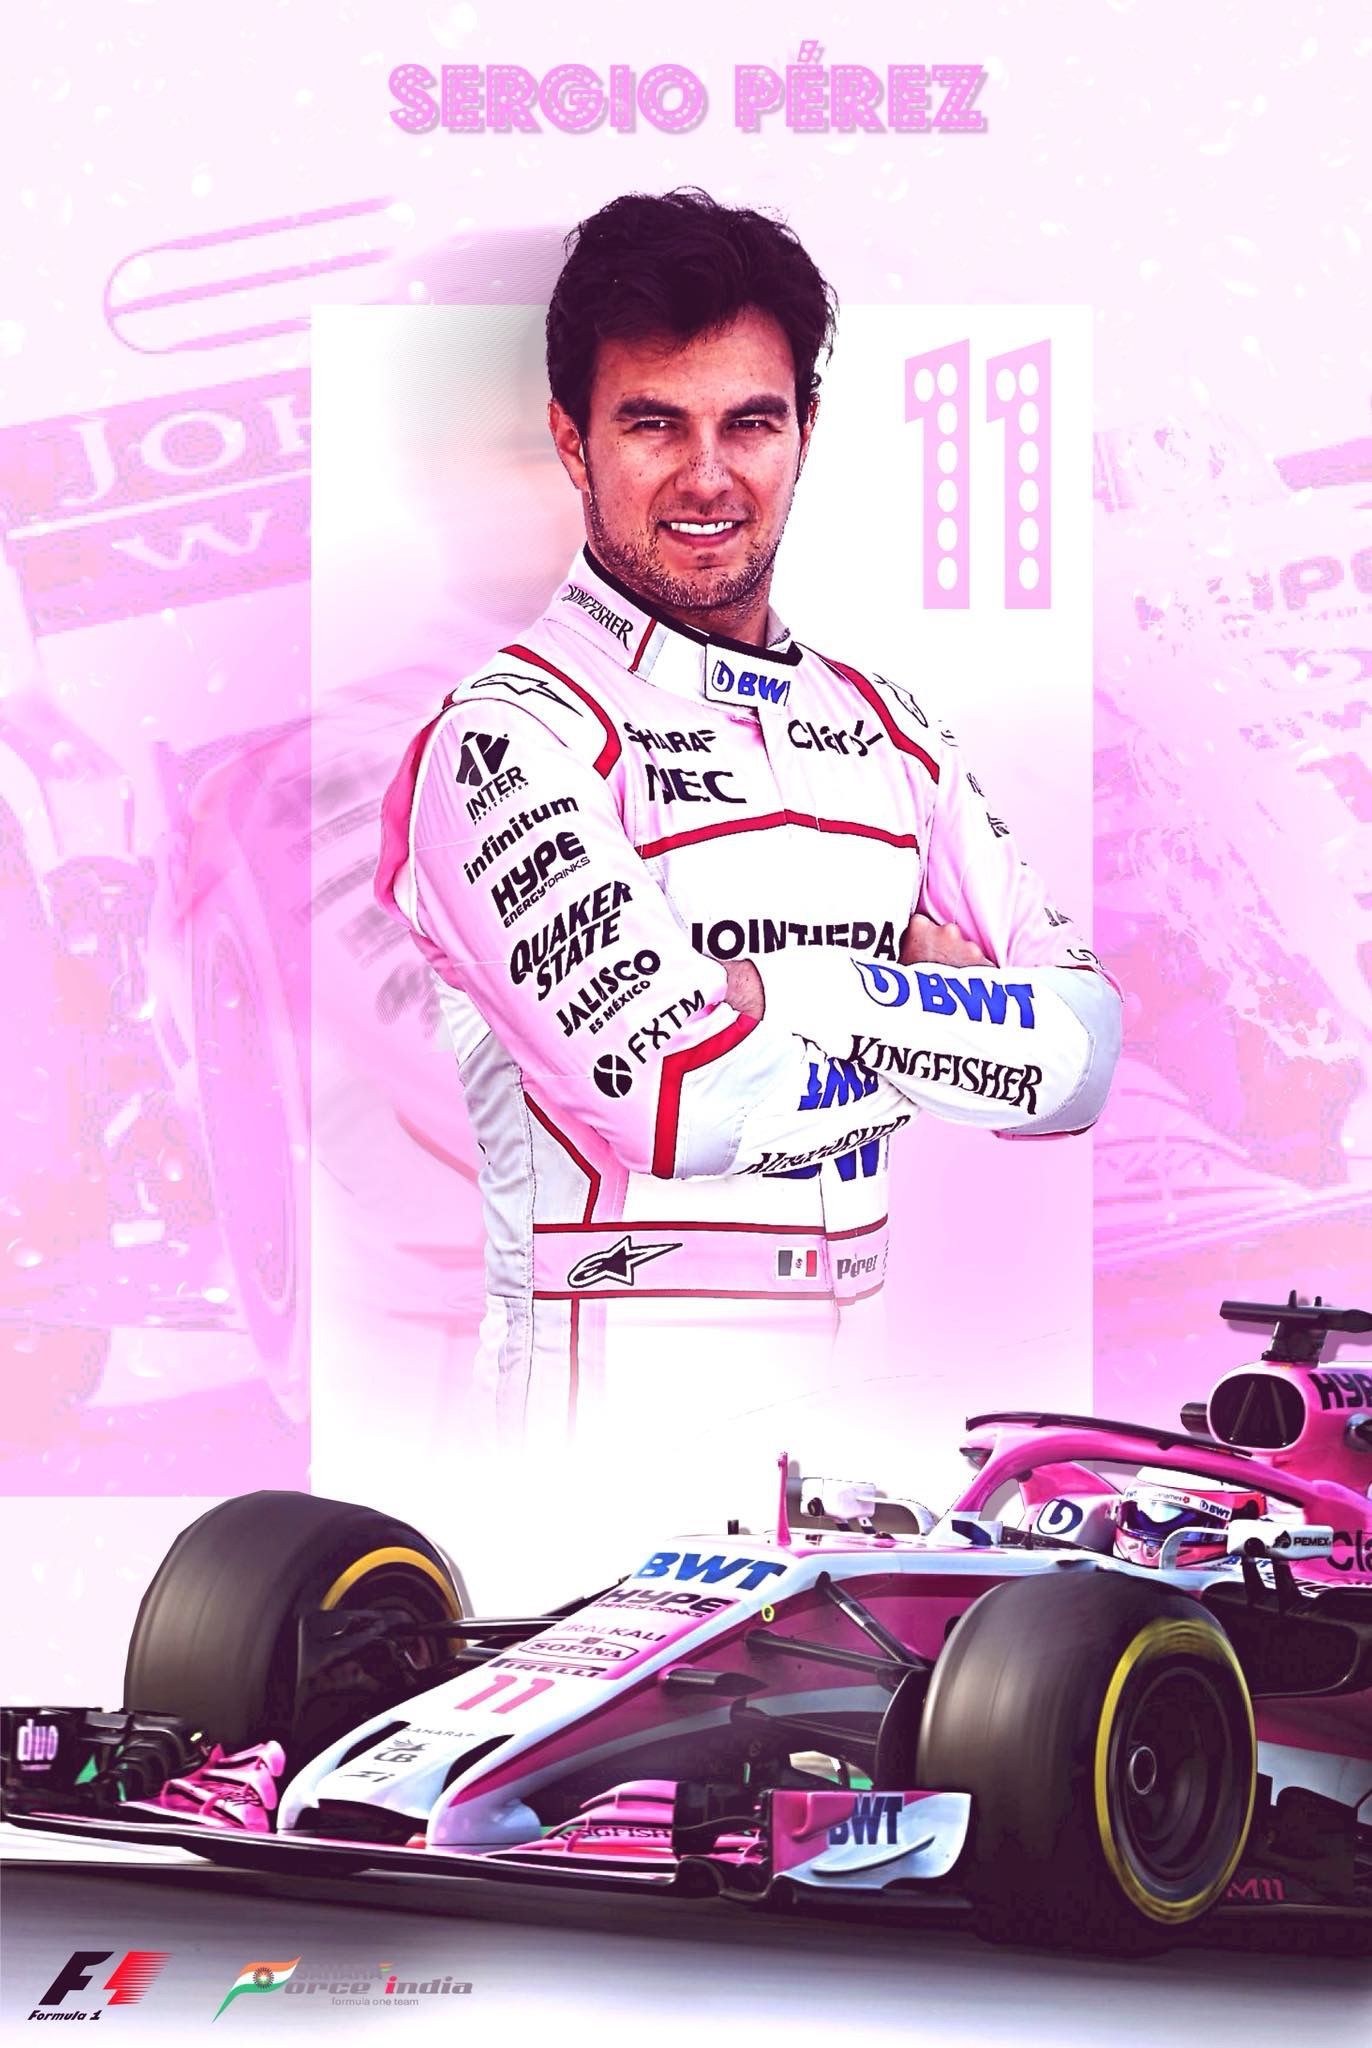 Sergio Perez Fanart. Fórmula F1 wallpaper hd, Checo